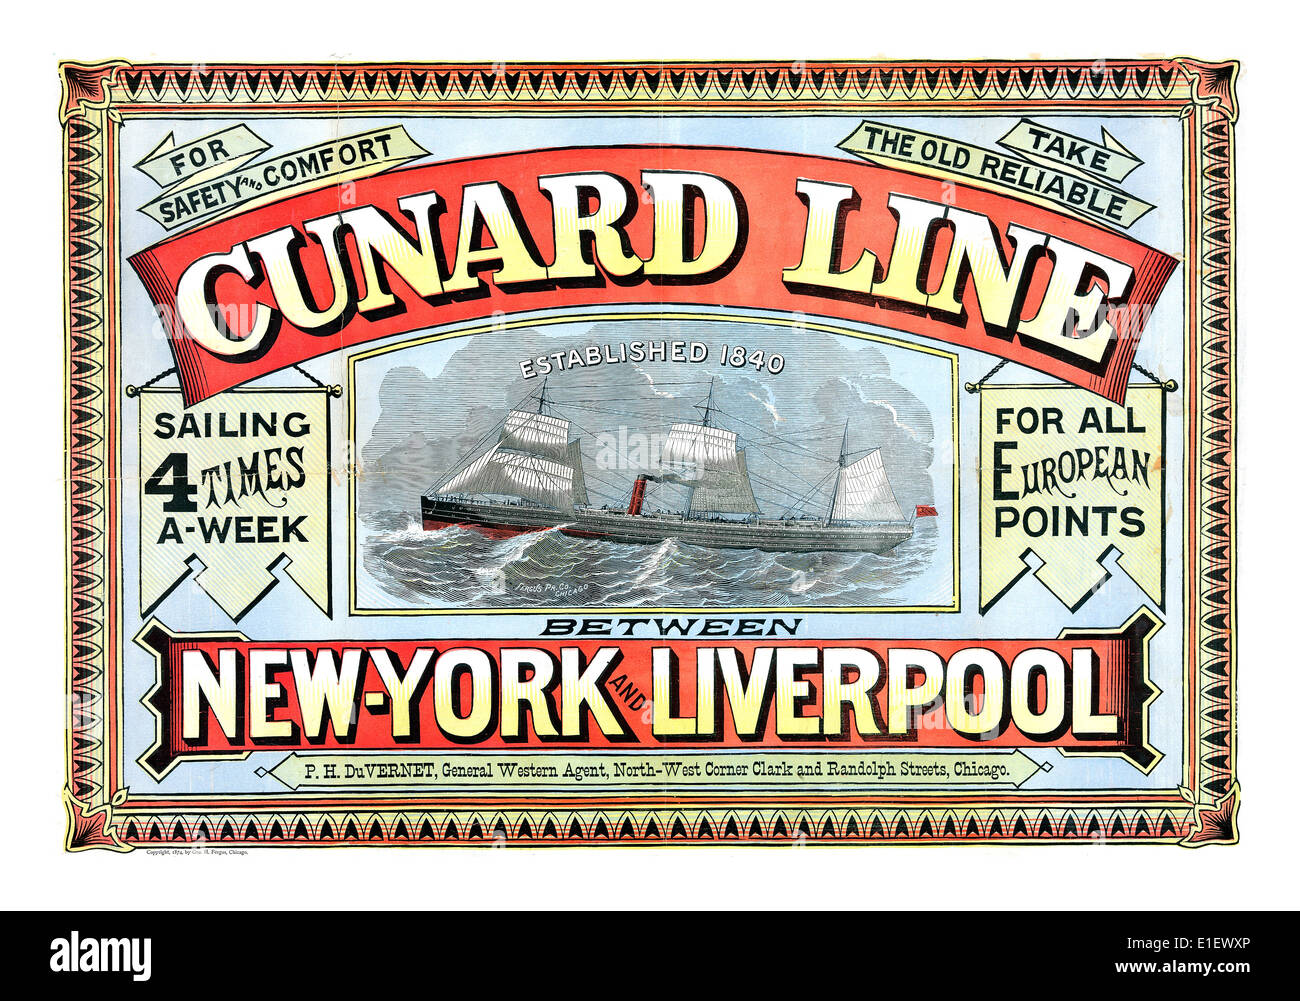 CUNARD LINE VOYAGE POSTER 19e siècle vintage poster historique de navigation Cunard Line Trans Atlantic de Liverpool à New York Banque D'Images